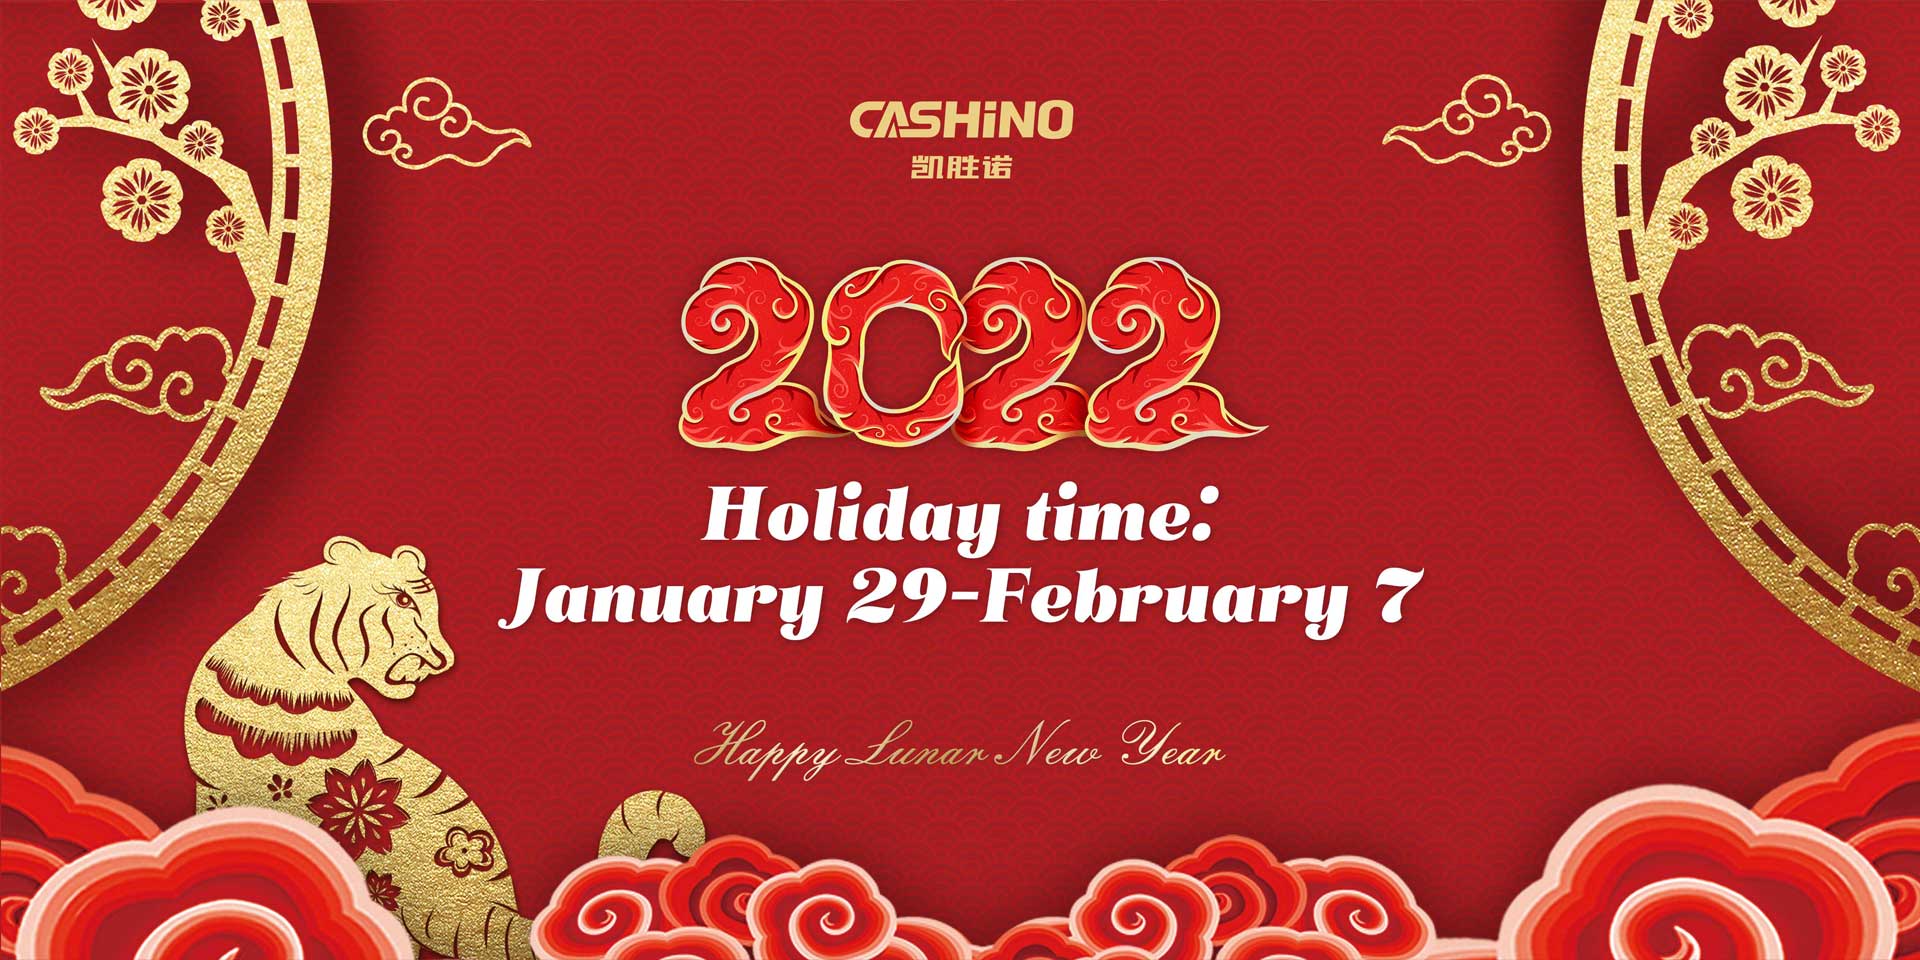 CASHINO Holiday Notice